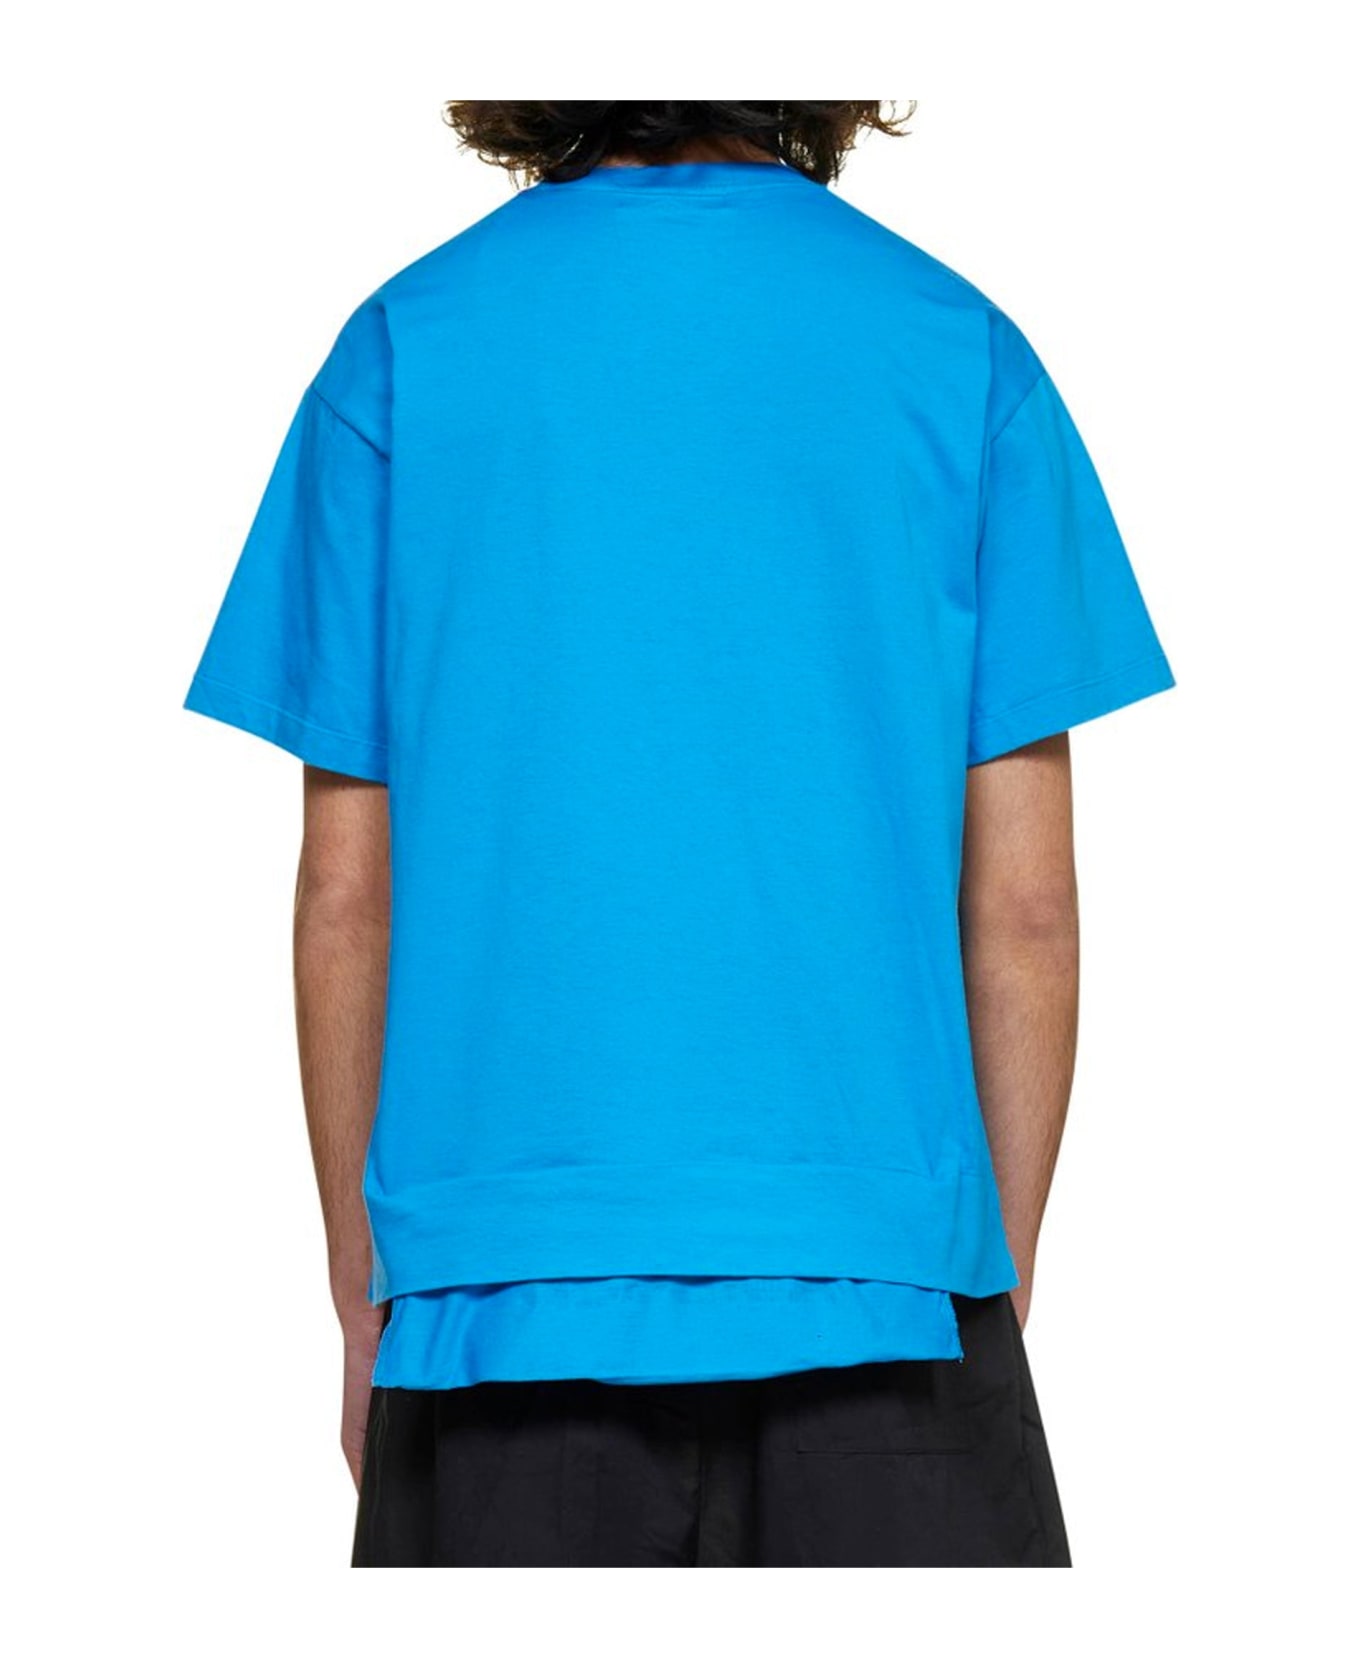 AMBUSH Cotton Logo T-shirt - Blue シャツ